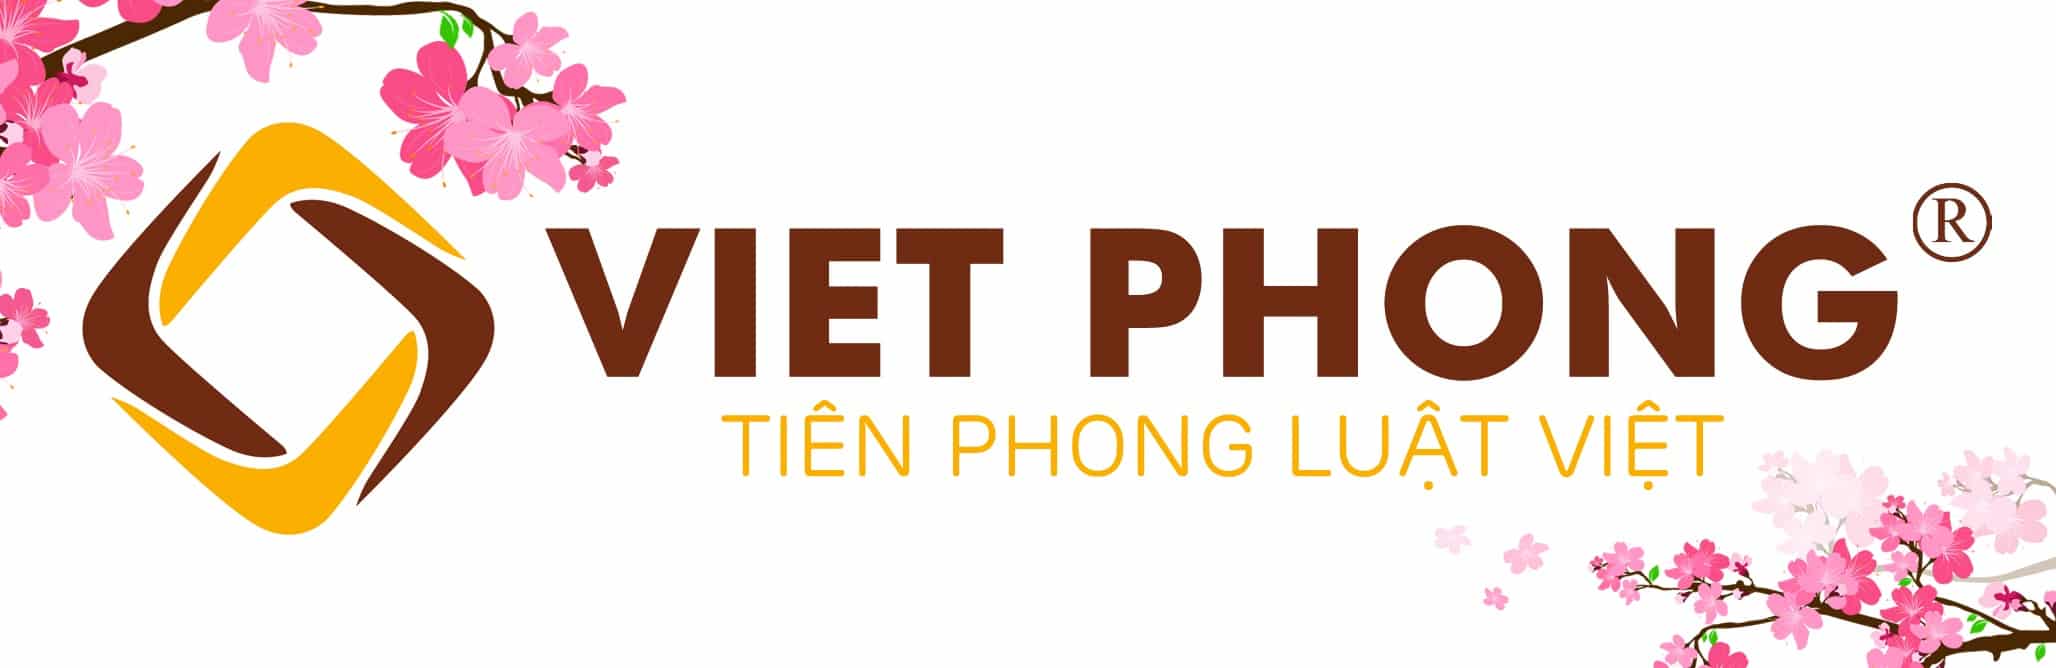 Luật Việt Phong | Công ty Luật uy tín